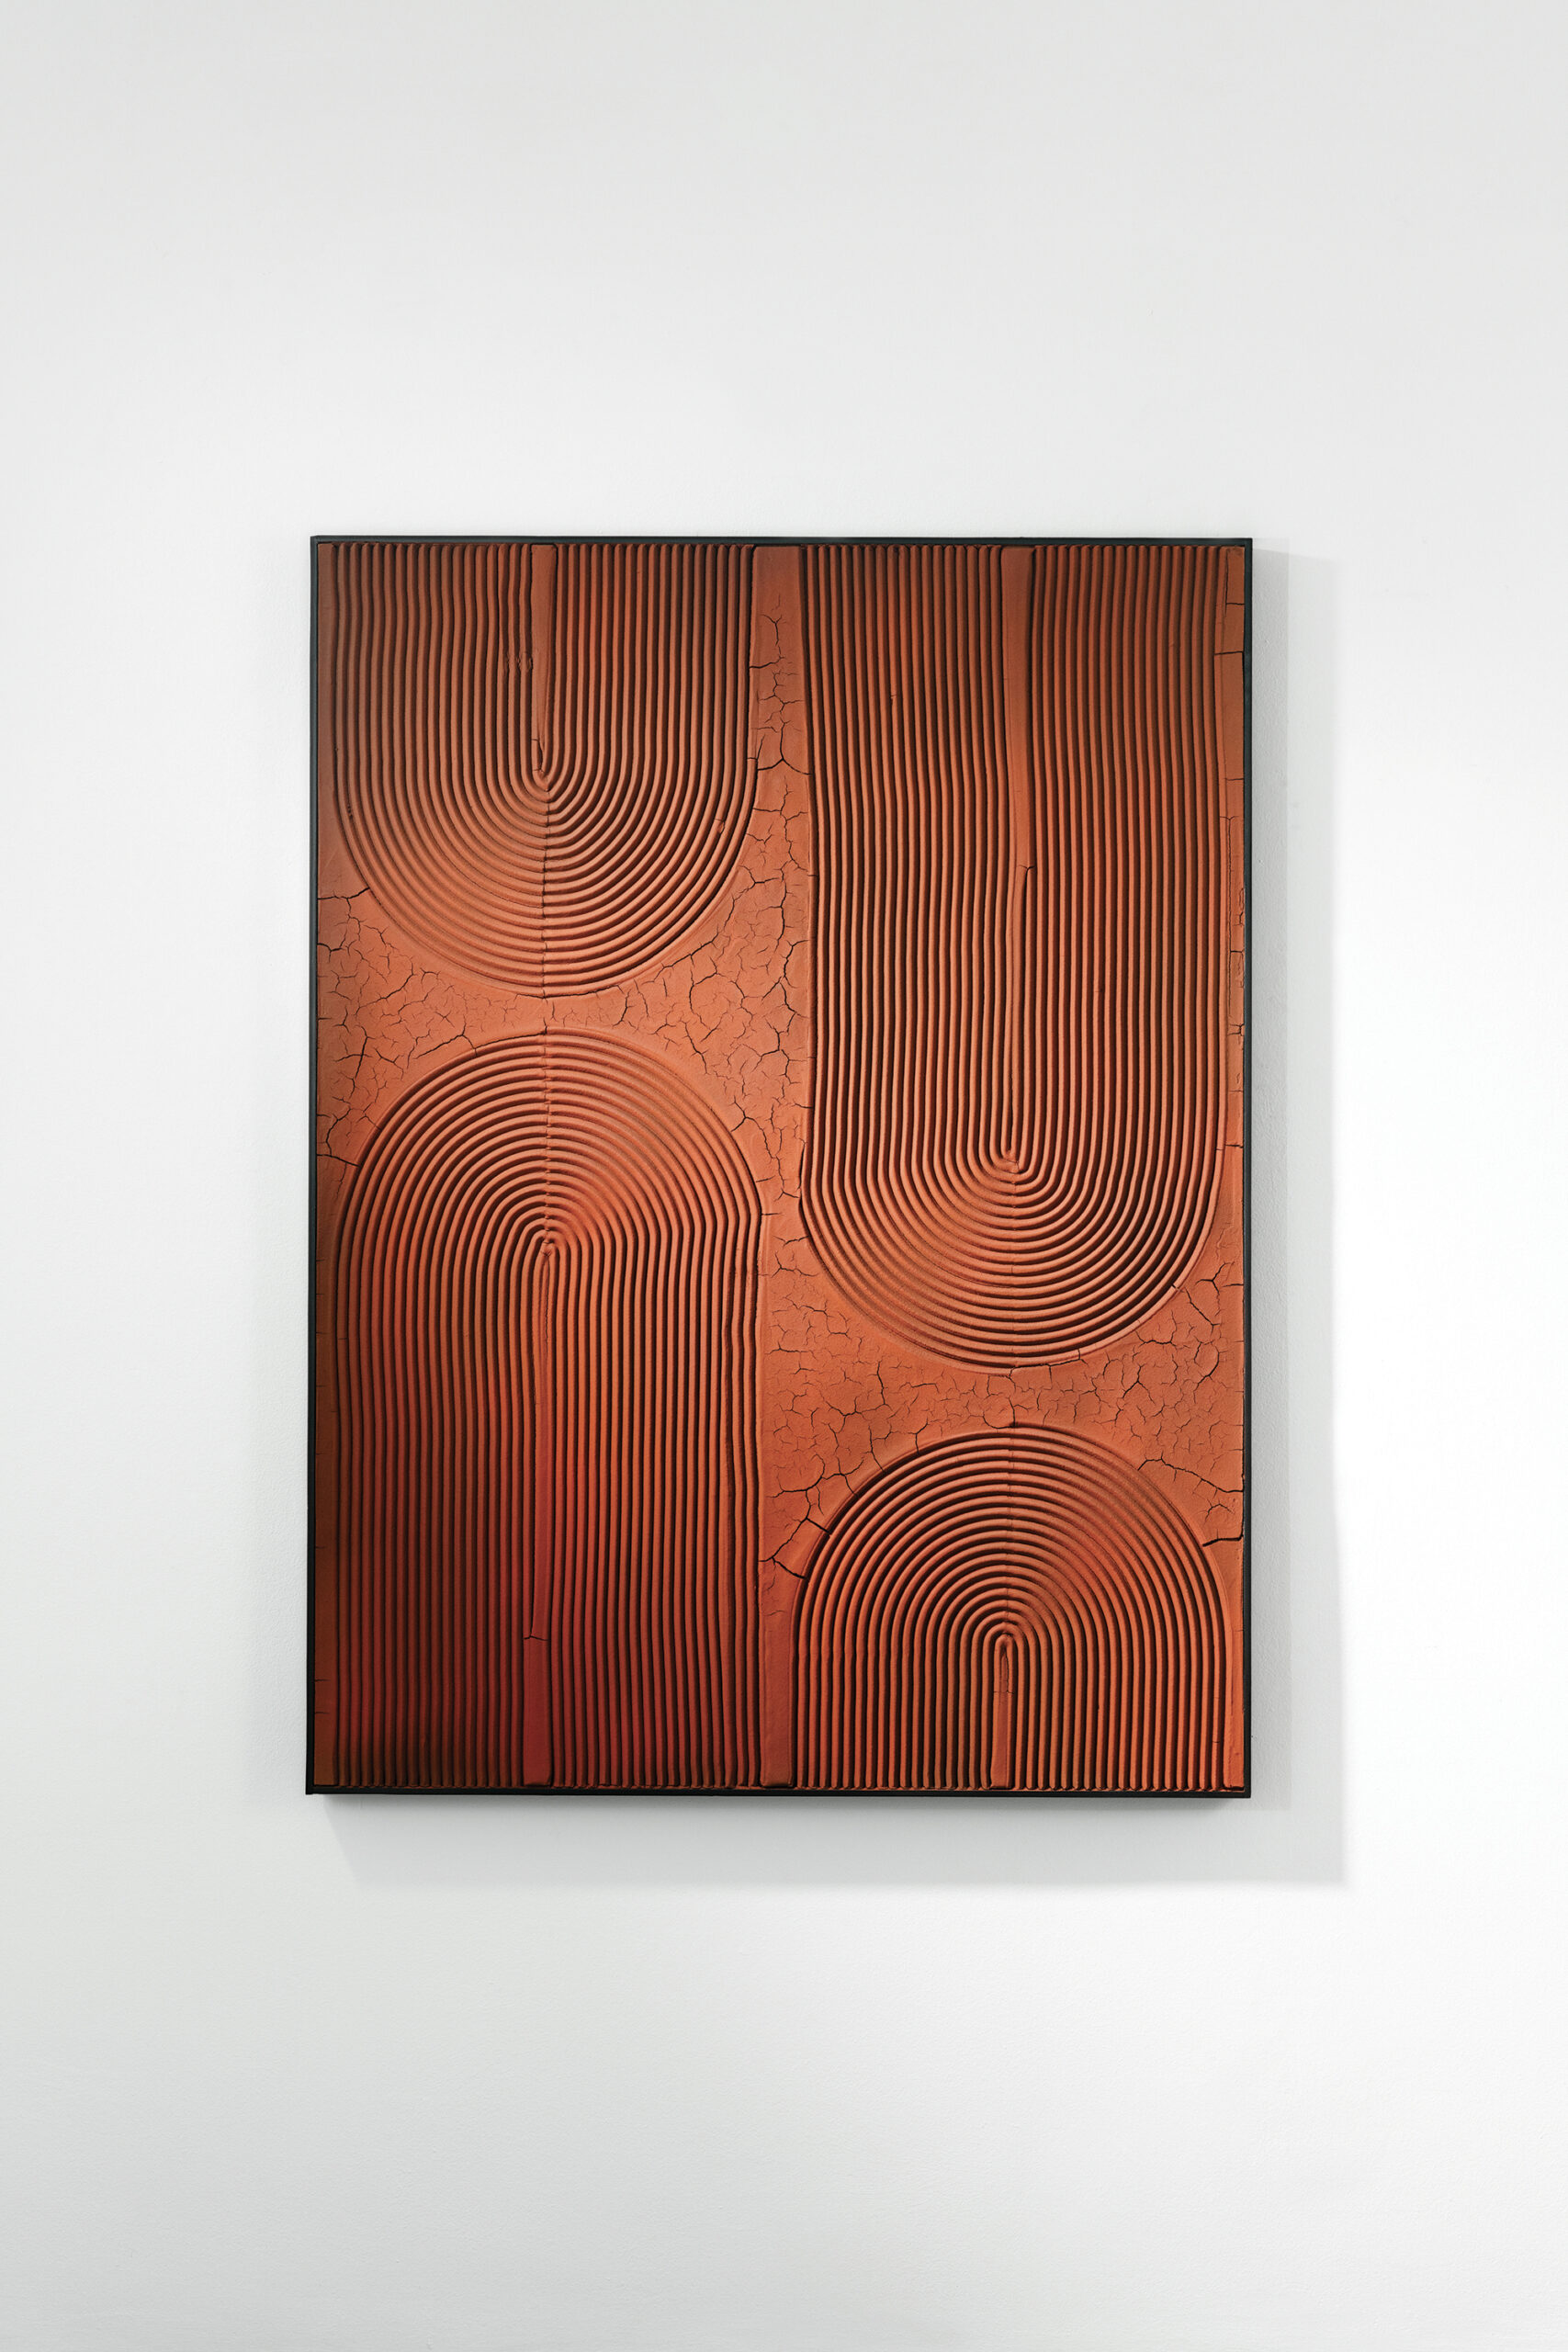 Automne, 2022 - Terre crue et pigments sur panneau en bois 170 x 130 cm